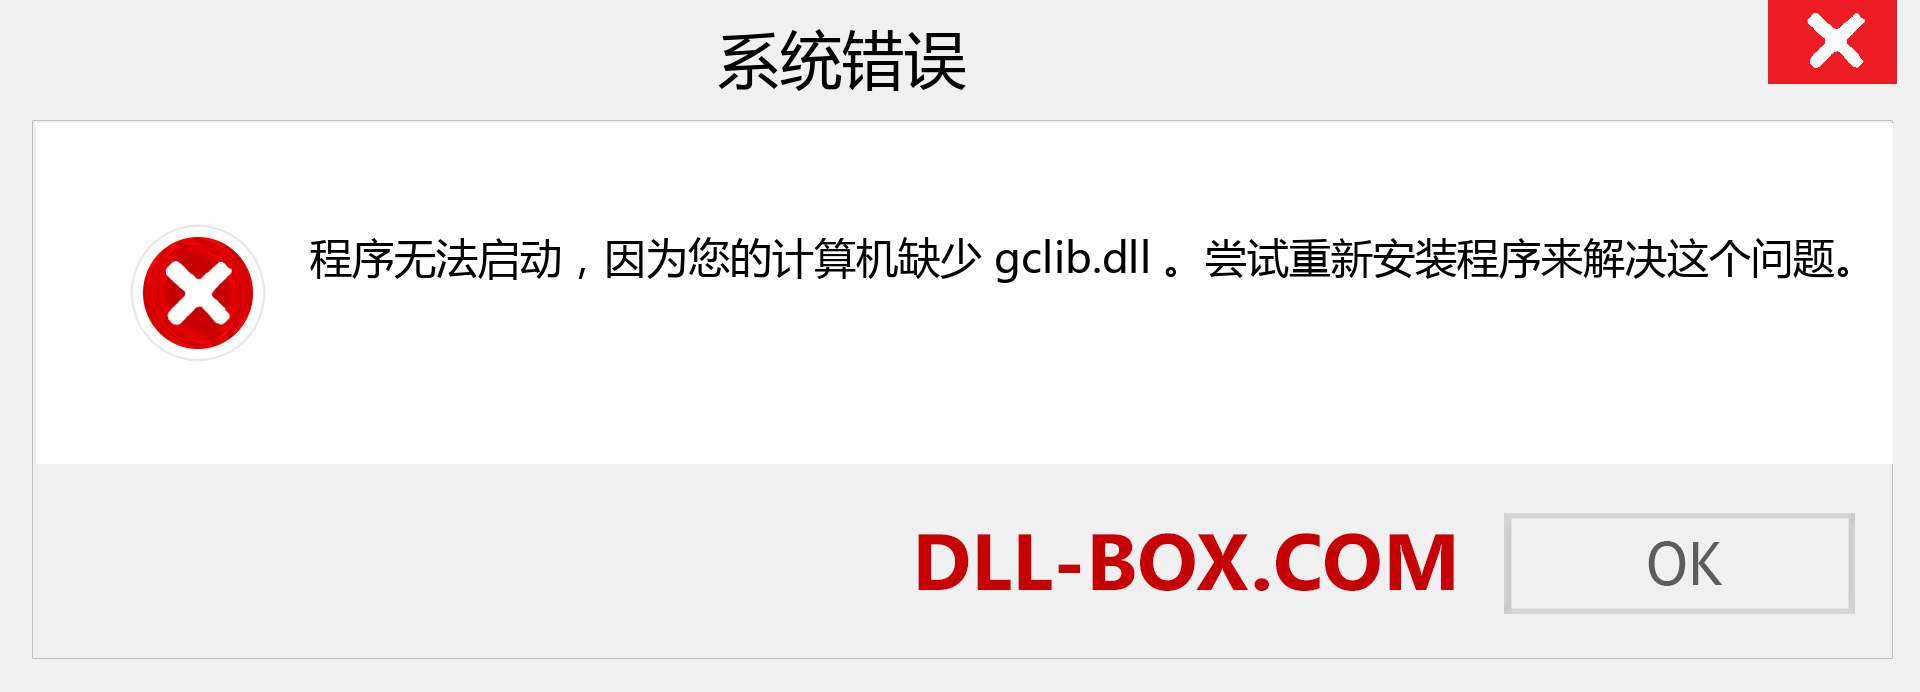 gclib.dll 文件丢失？。 适用于 Windows 7、8、10 的下载 - 修复 Windows、照片、图像上的 gclib dll 丢失错误